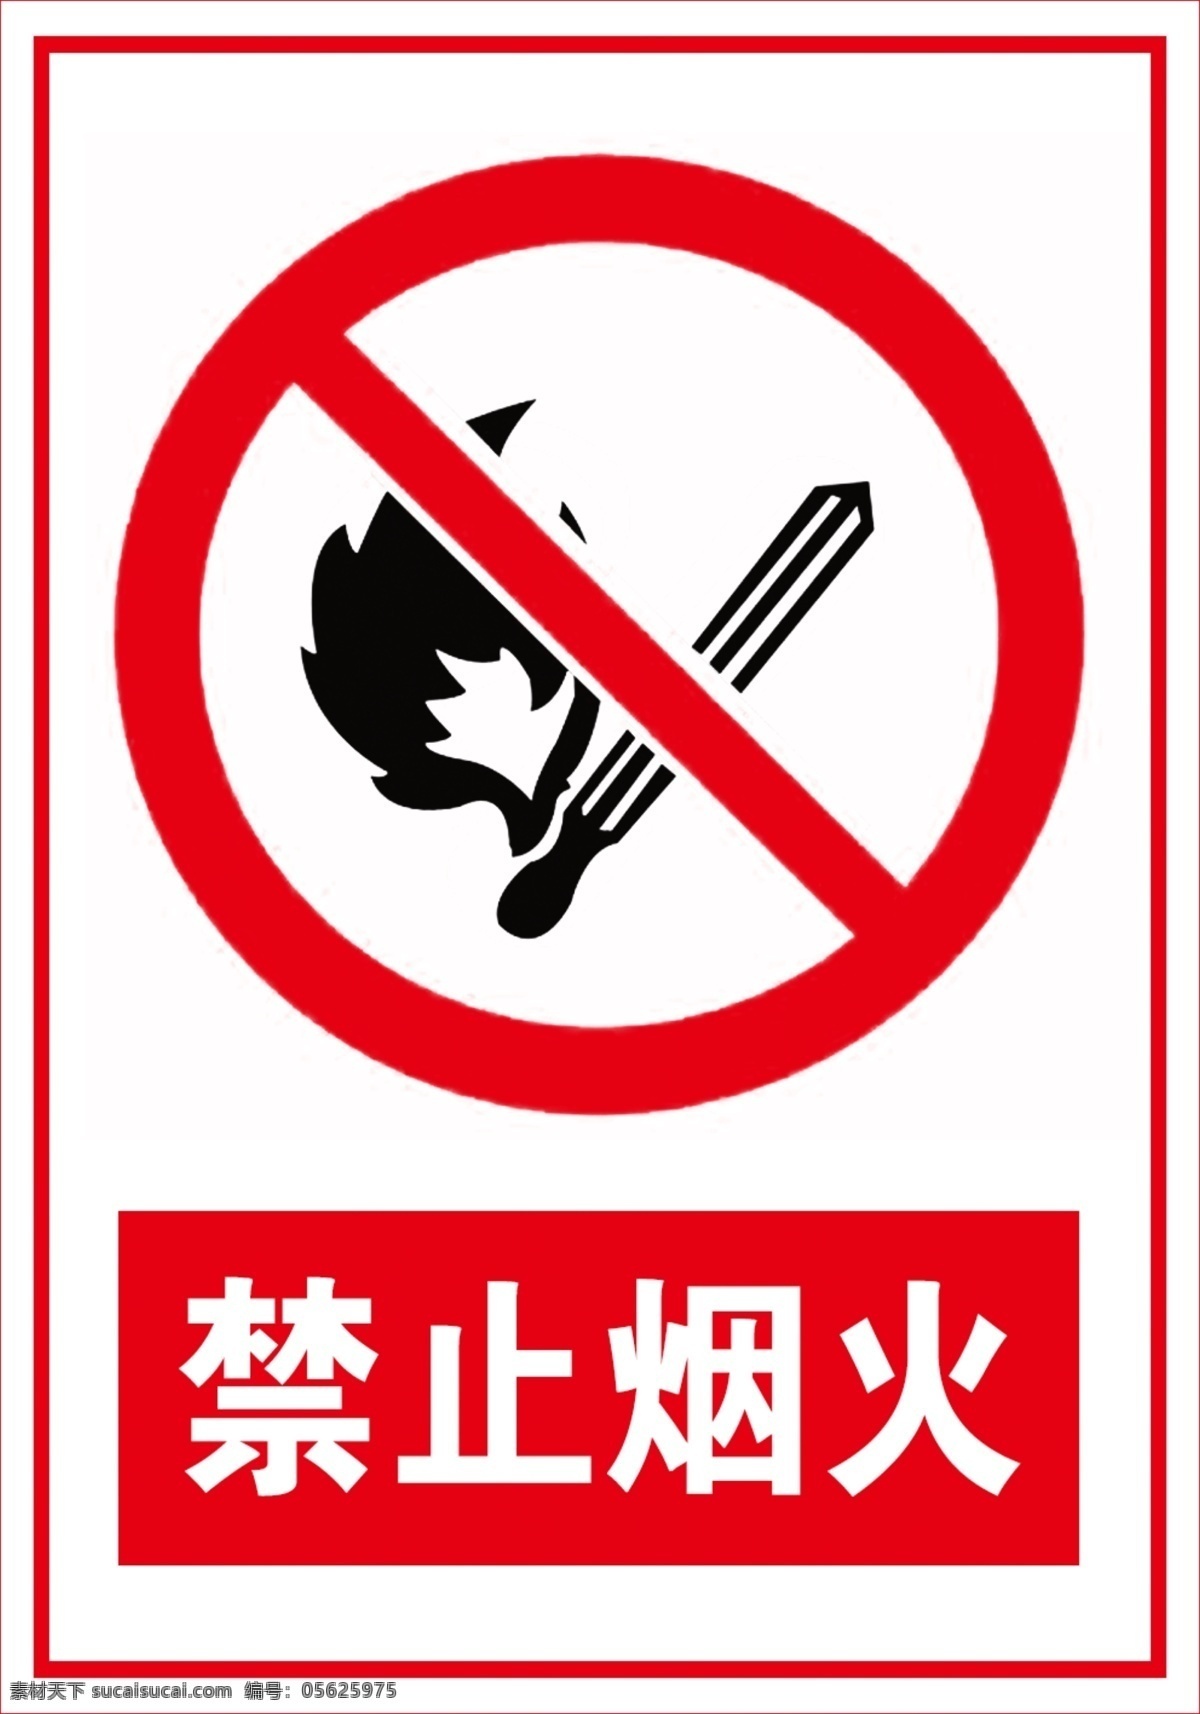 禁止烟火 禁止 烟 安全标识 烟火 禁止标志